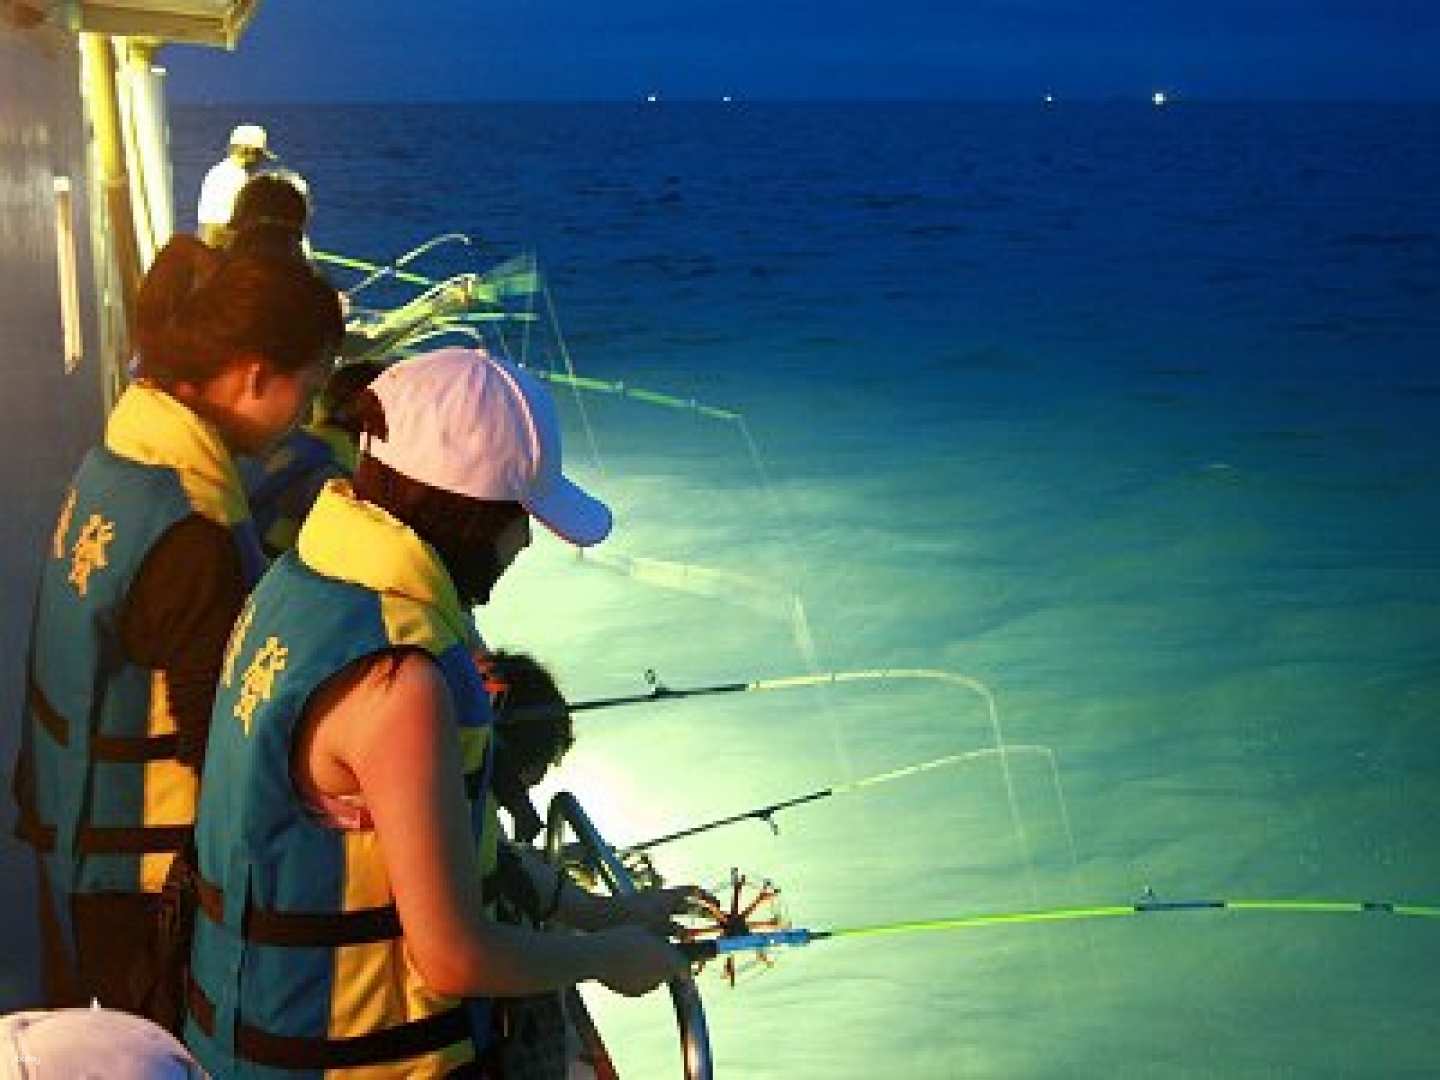 澎湖-新來發夜釣| 深度夜釣小管 &小管三吃| 限時71折,再折 50